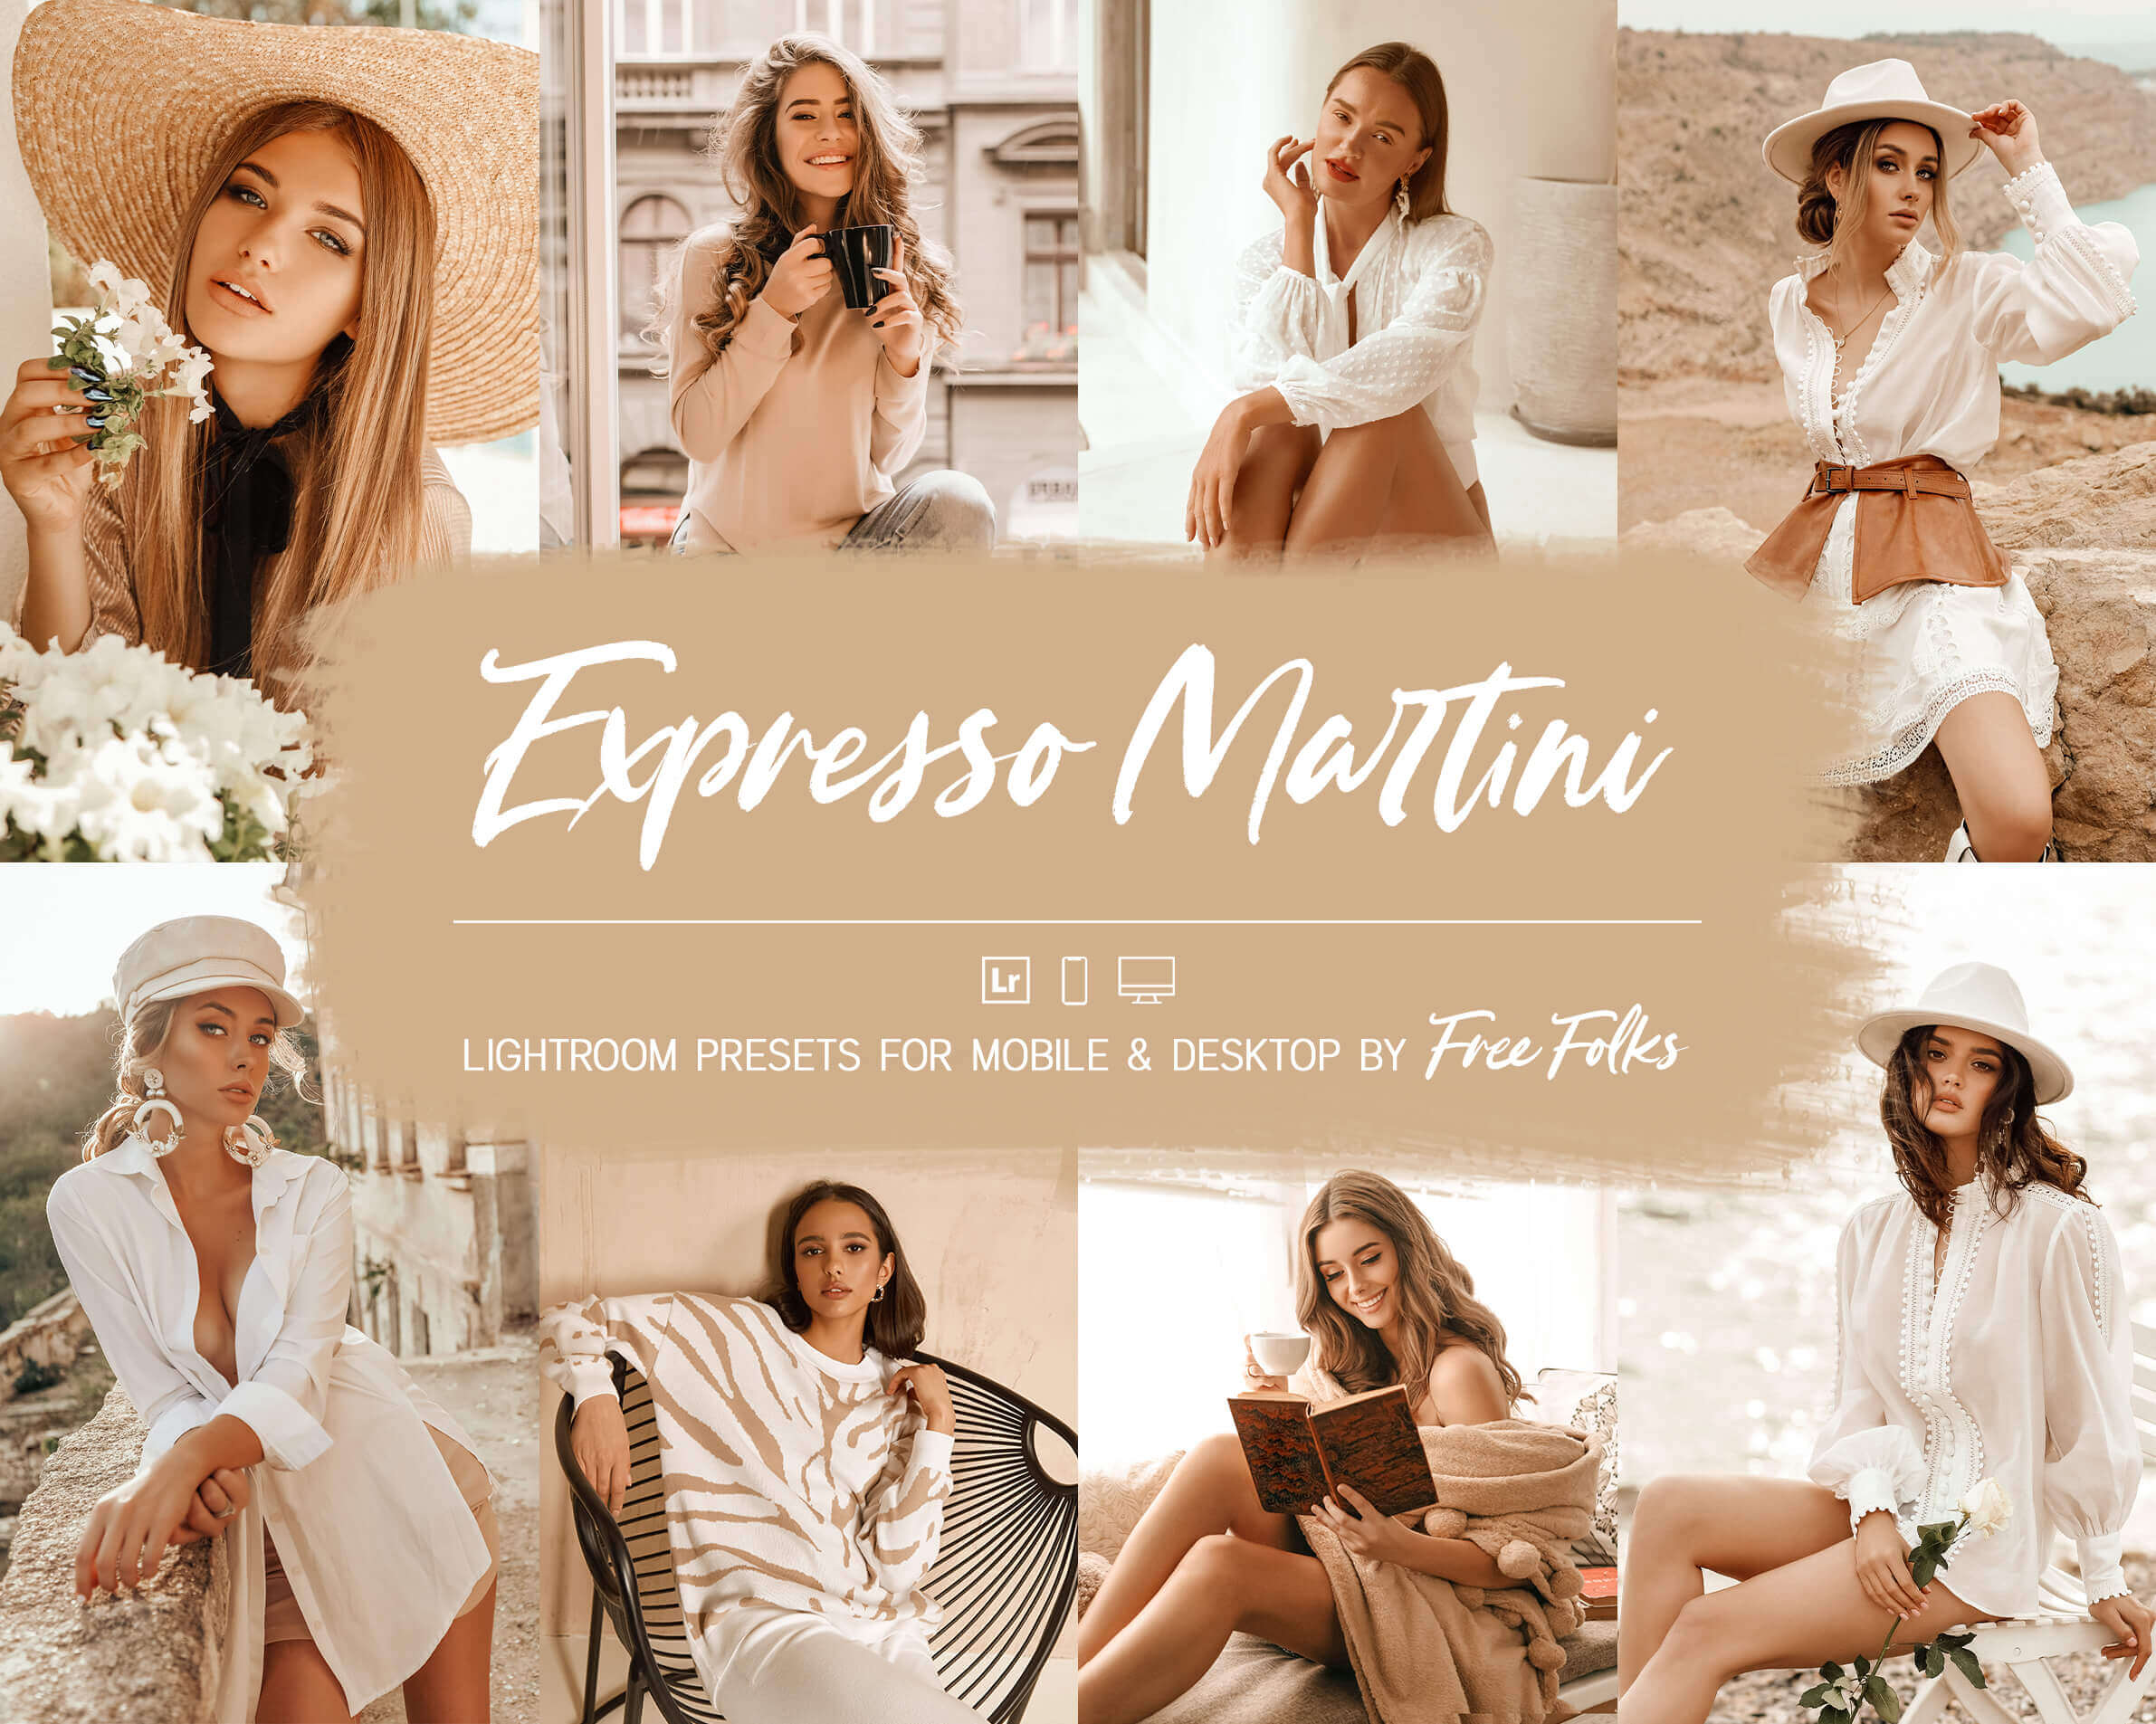 12 Expresso Martini Lightroom Presets For Mobile & Desktop